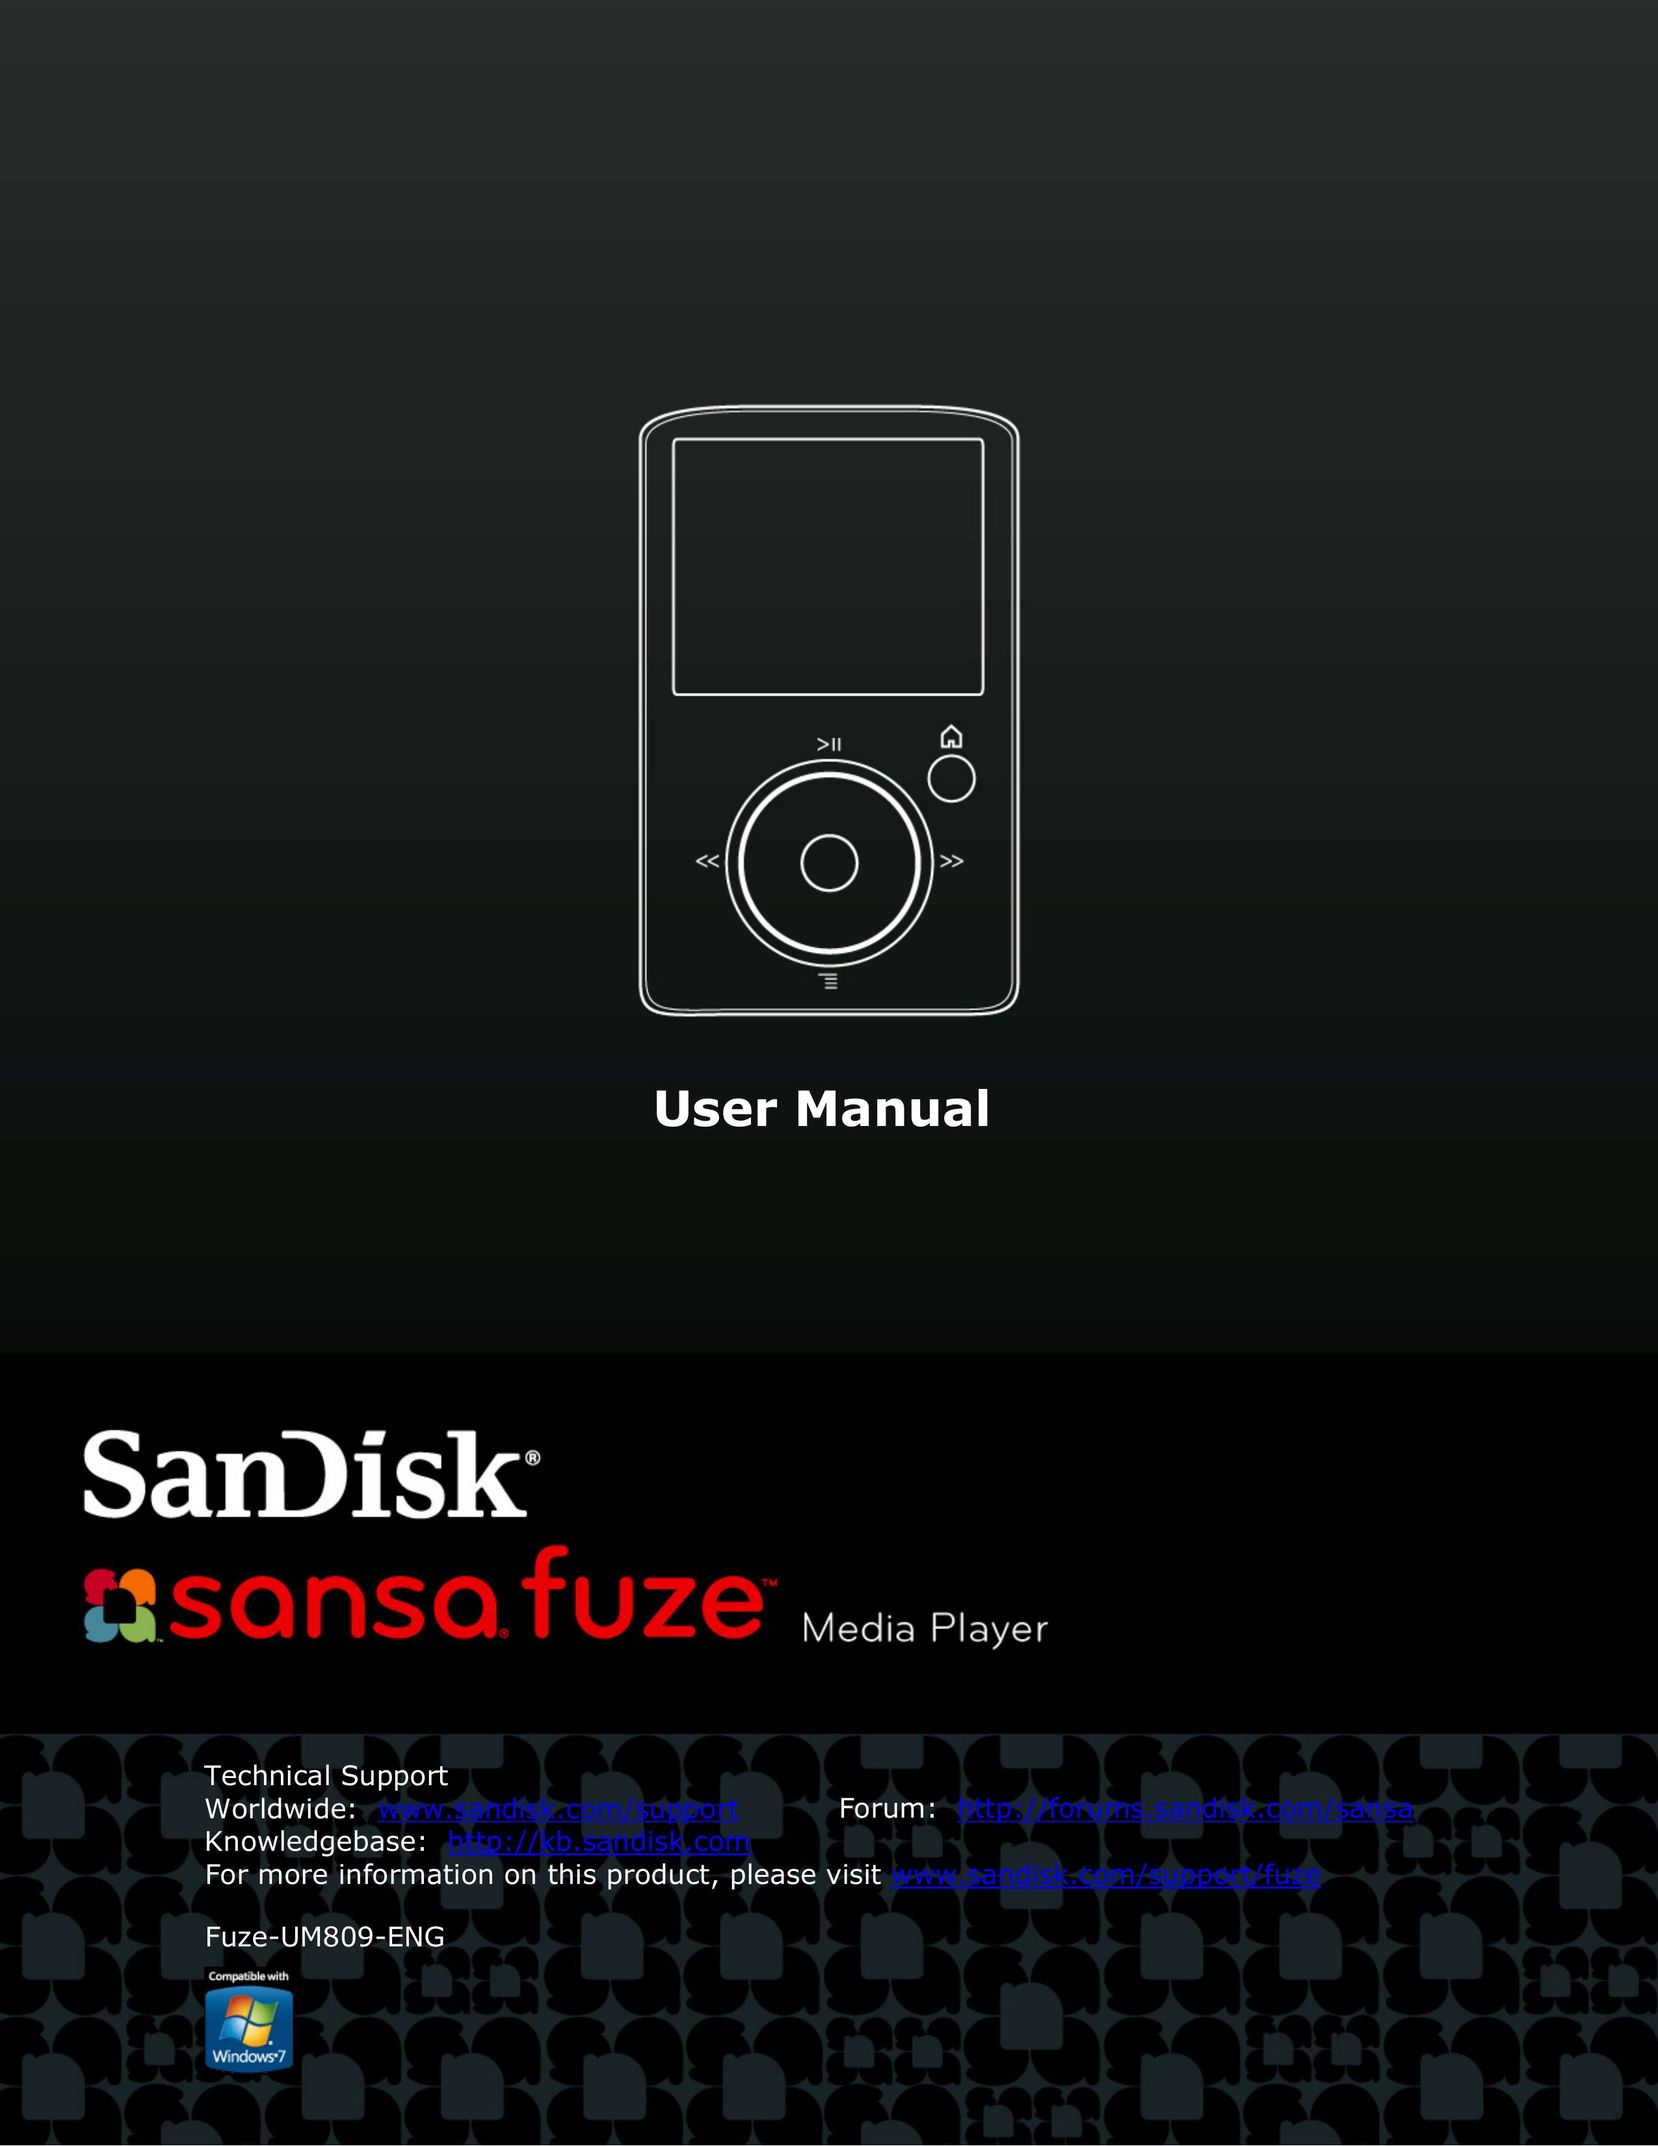 SanDisk FUZE-UM809-ENG MP3 Player User Manual